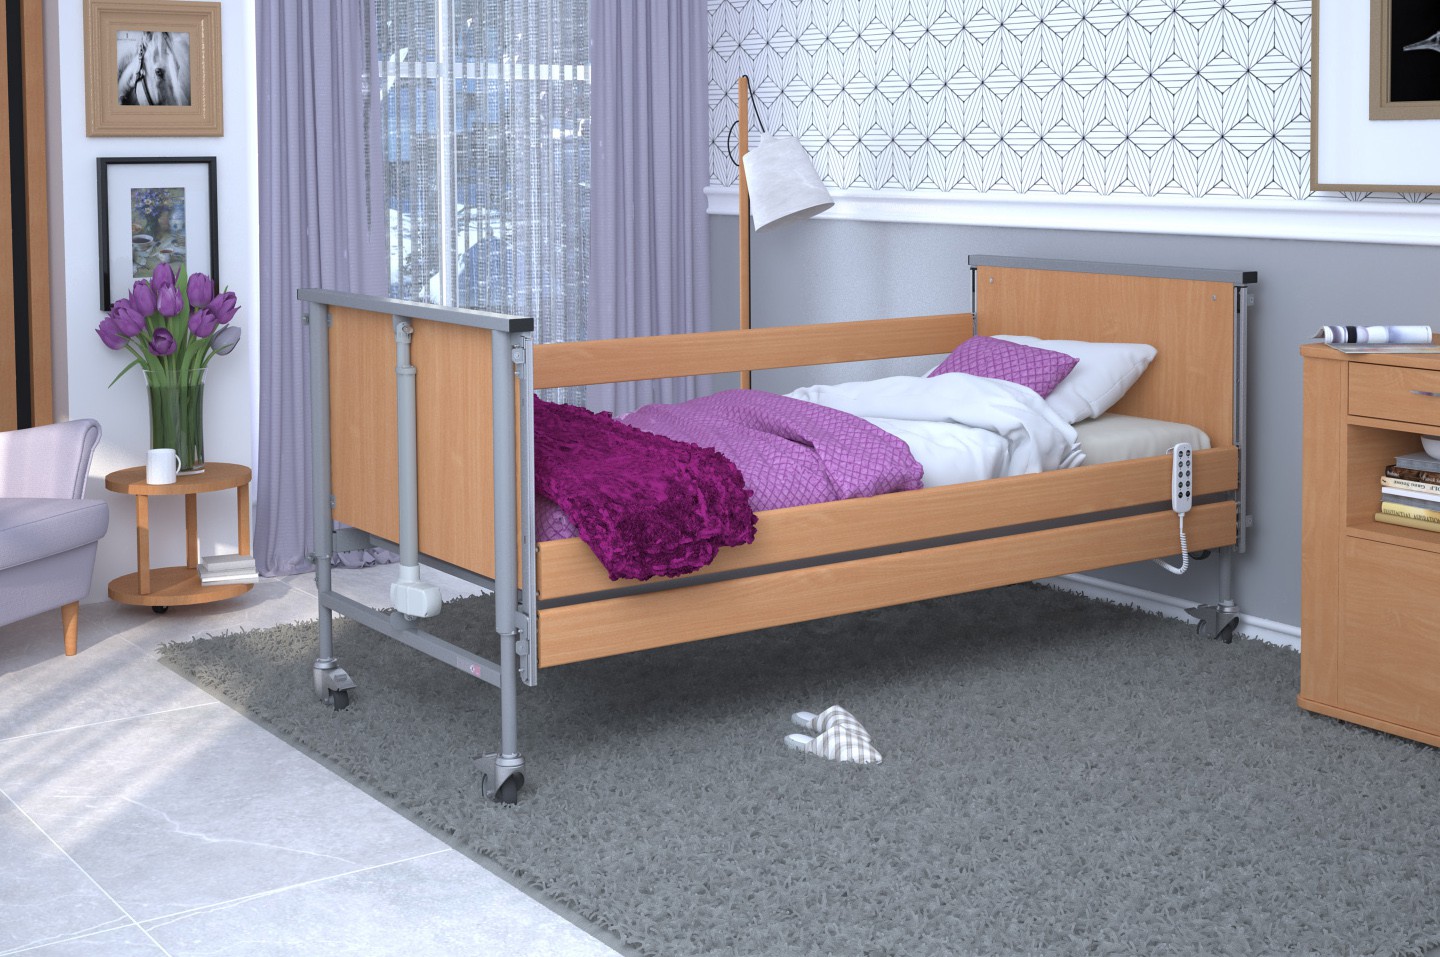 Łóżko rehabilitacyjne TAURUS 2 regulowane RehaBed : Rodzaj leża - Metalowe, Standardowe kolory ramy łóżka - Jasny dąb, Stolik typu Tablet: - Nie, Wysięgnik (max odciążenie 80 kg): - Tak